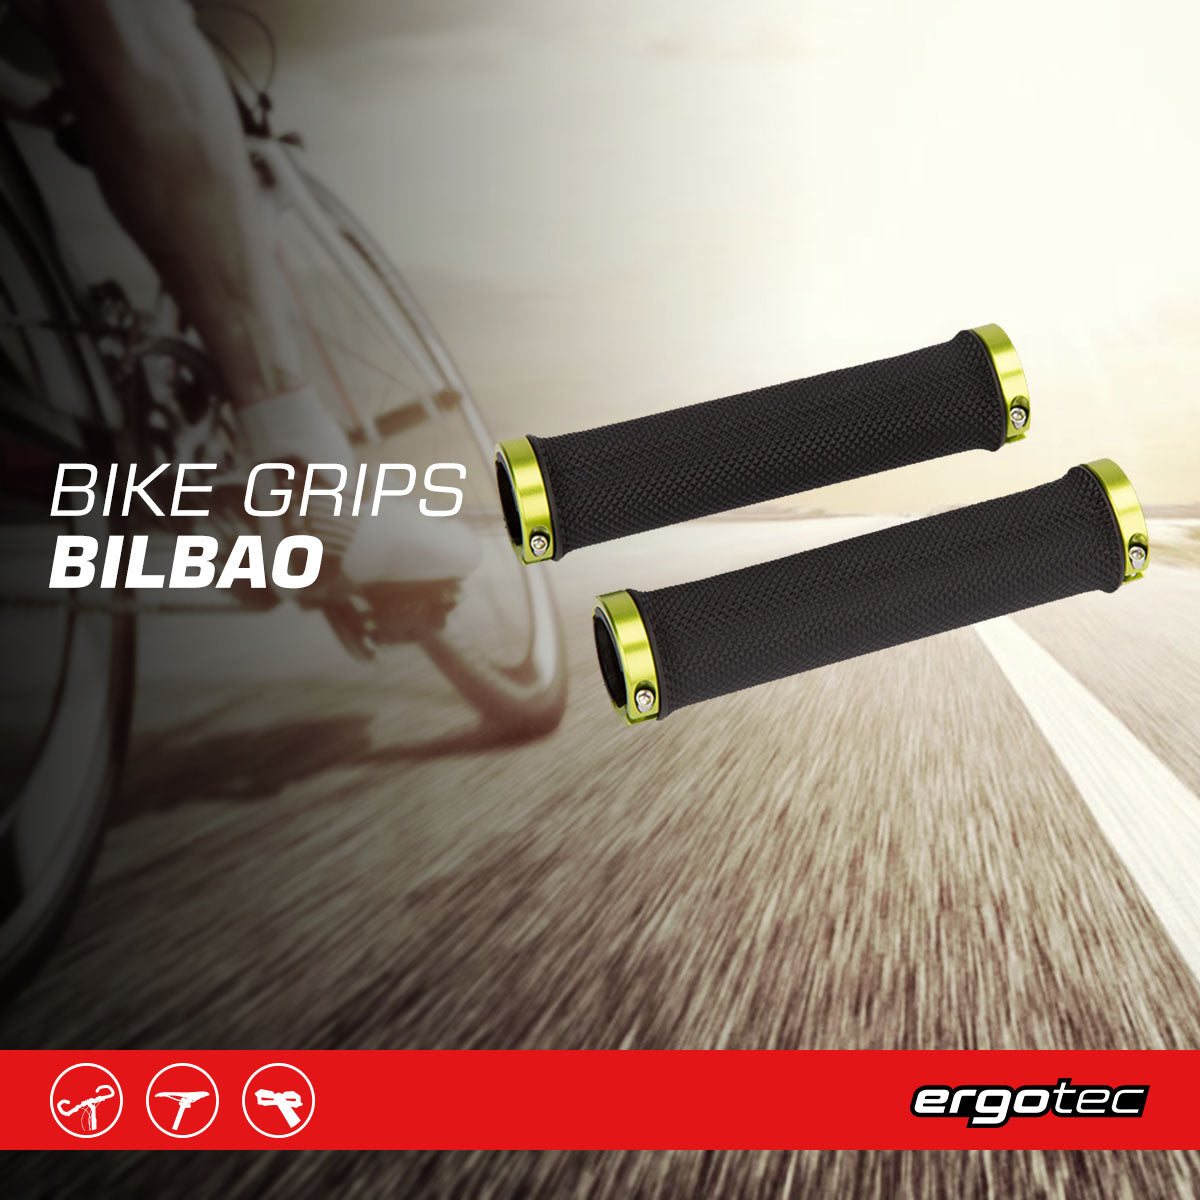 Ergotec - Bilbao - Bike Grips